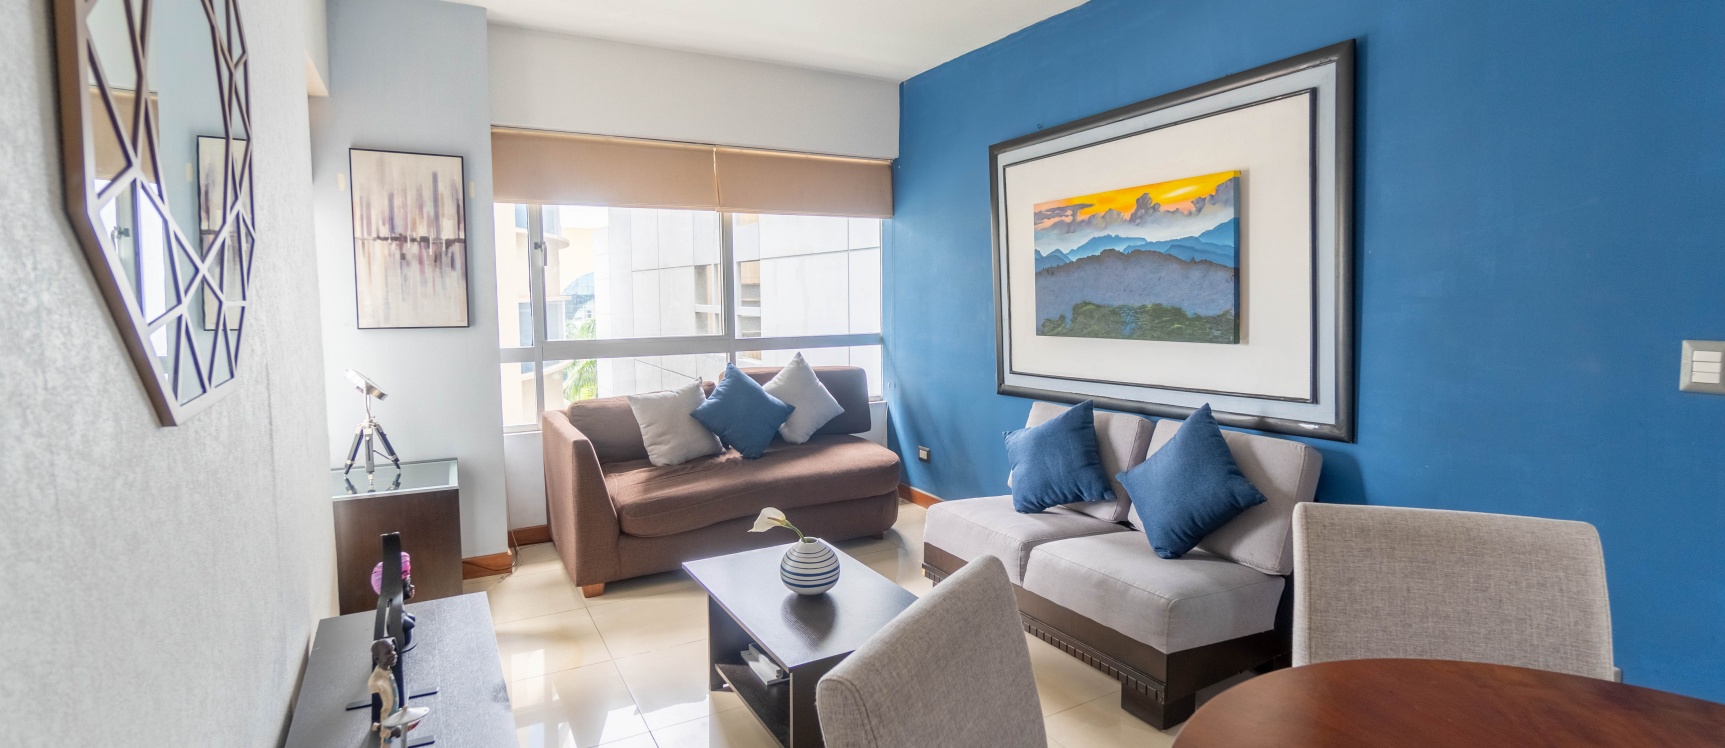 GeoBienes - Suite amoblada en venta ubicada en Torres del Sol, Norte de Guayaquil - Plusvalia Guayaquil Casas de venta y alquiler Inmobiliaria Ecuador